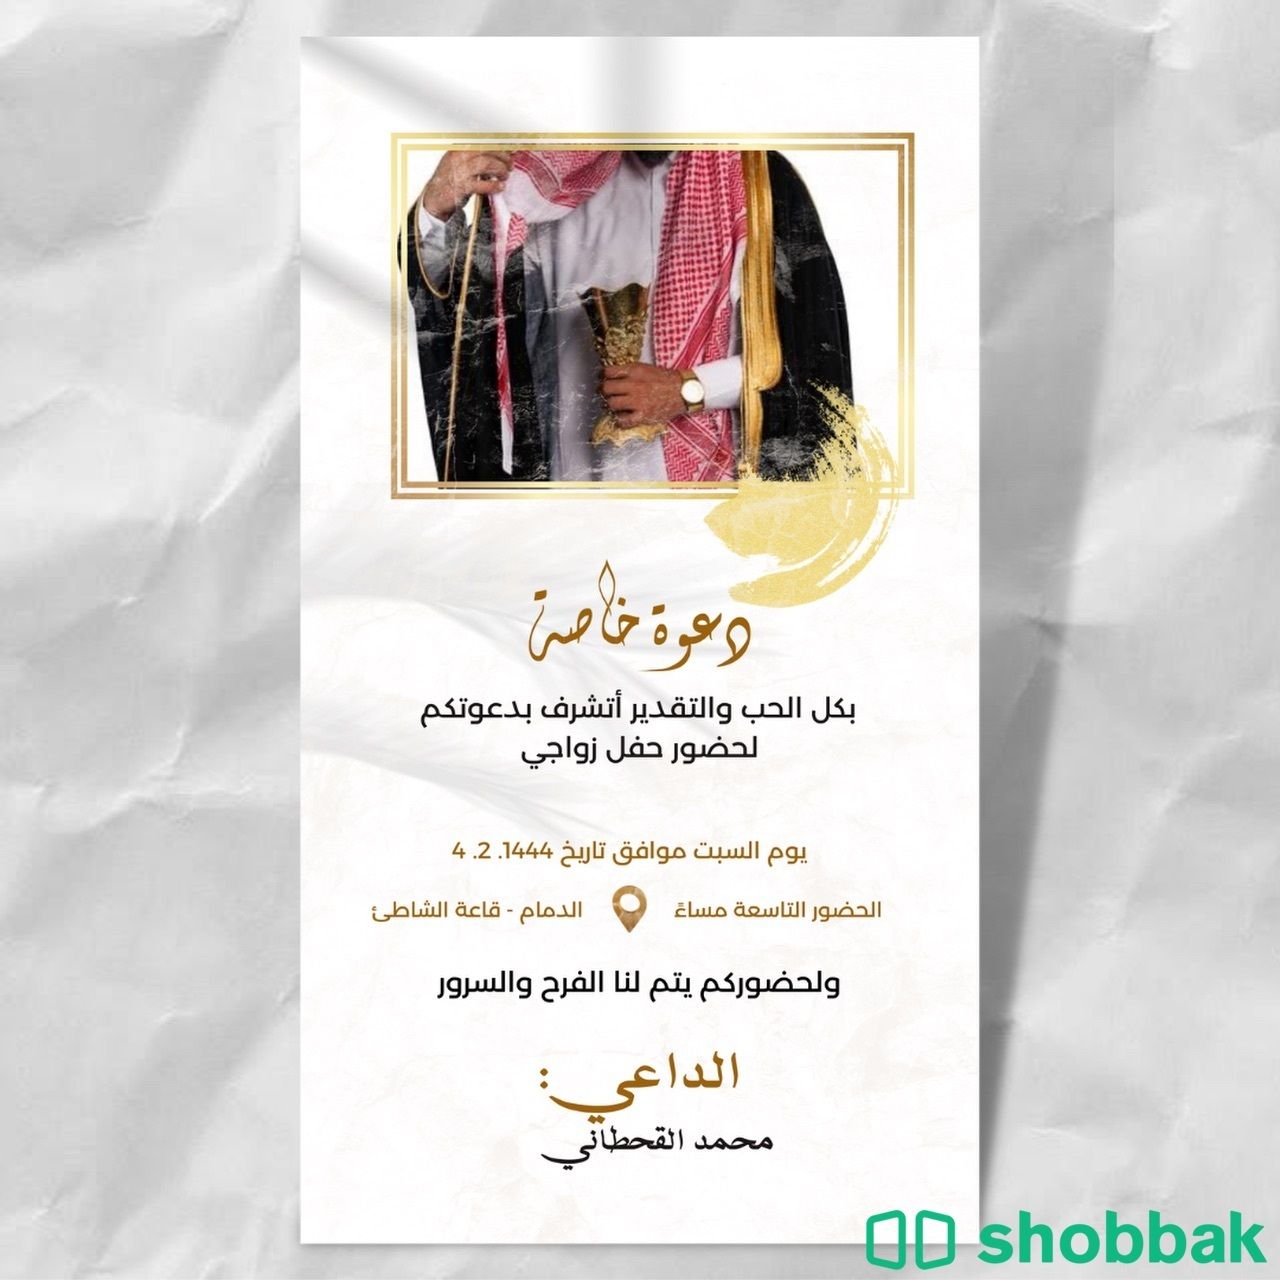 تصميم دعوات إلكترونية باسعار منافسة حسب الطلب او جاهزة  Shobbak Saudi Arabia